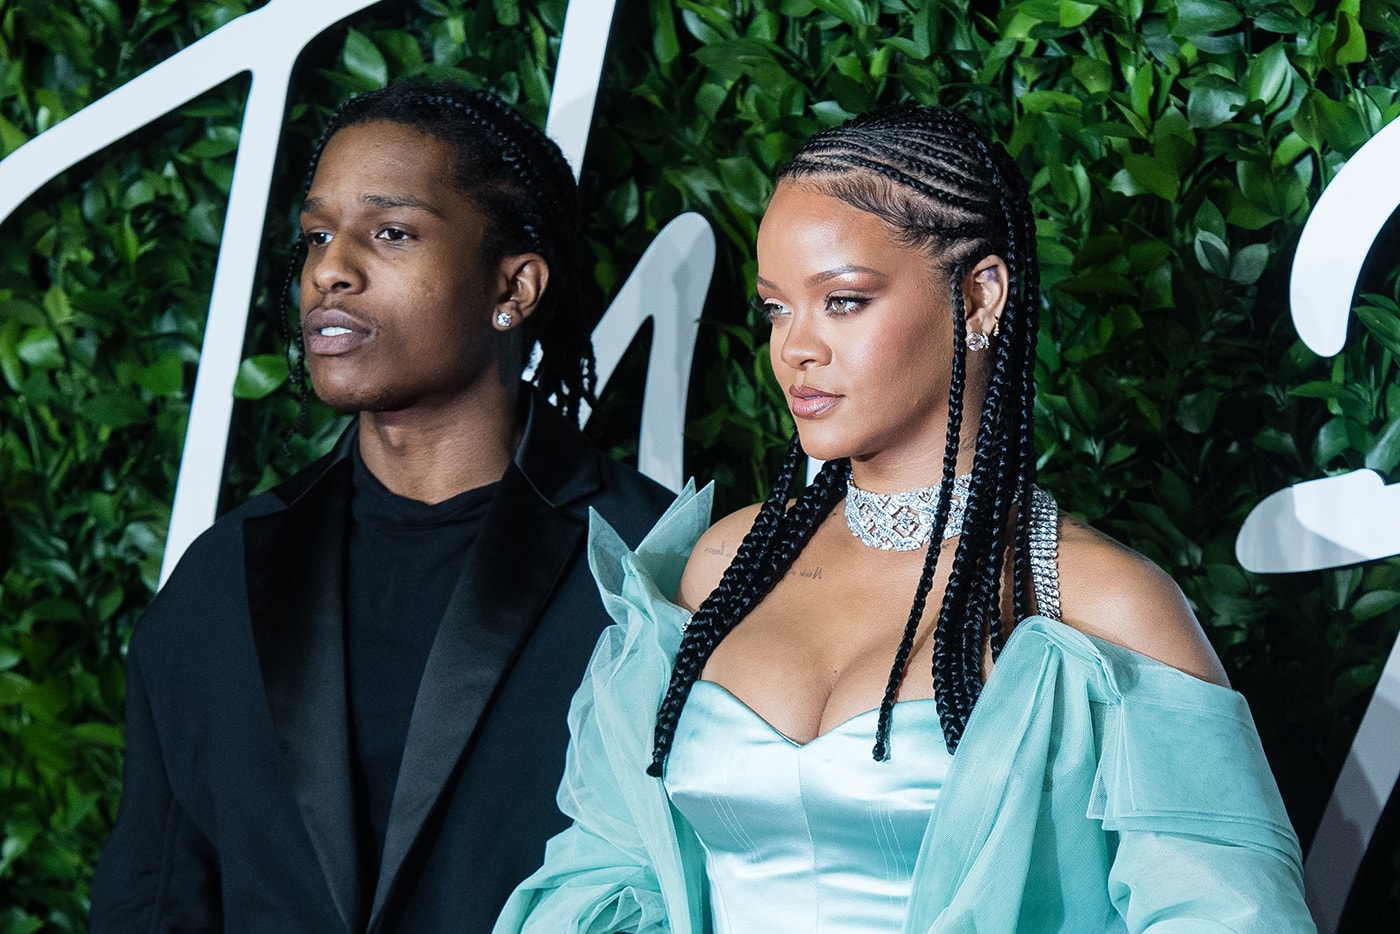 消息稱 A$AP Rocky 與 Rihanna 疑似正展開新戀情